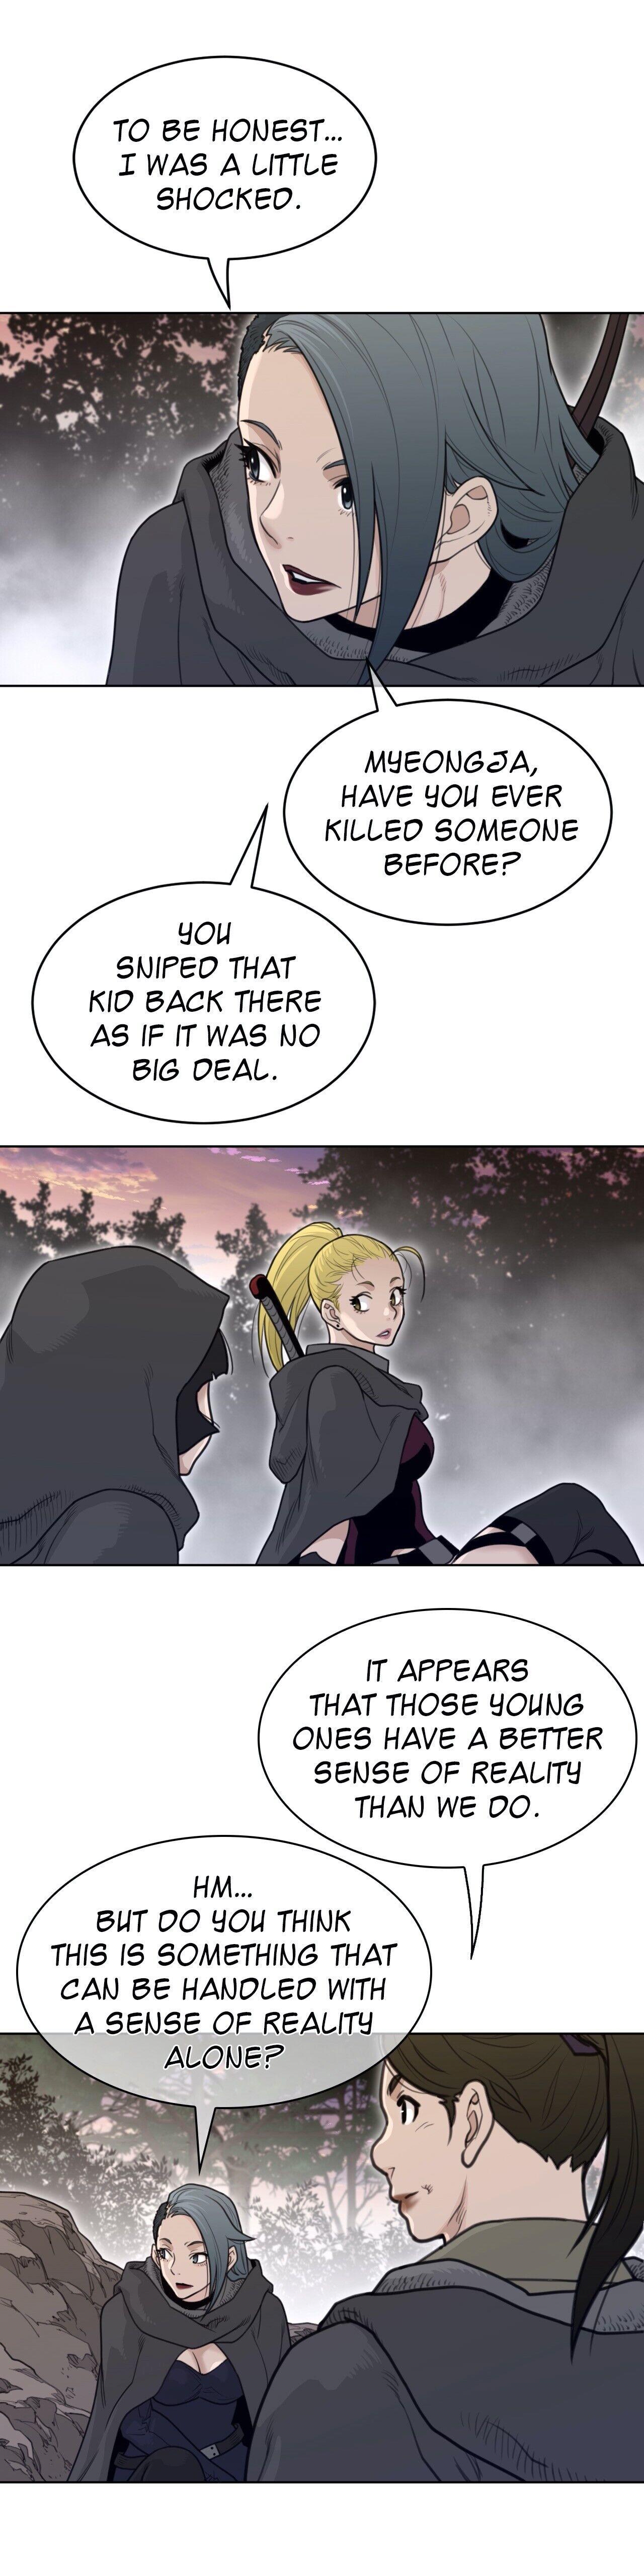 Perfect Half Chapter 135 : Another Reunion (Season 2 Finale) page 7 - Mangakakalot